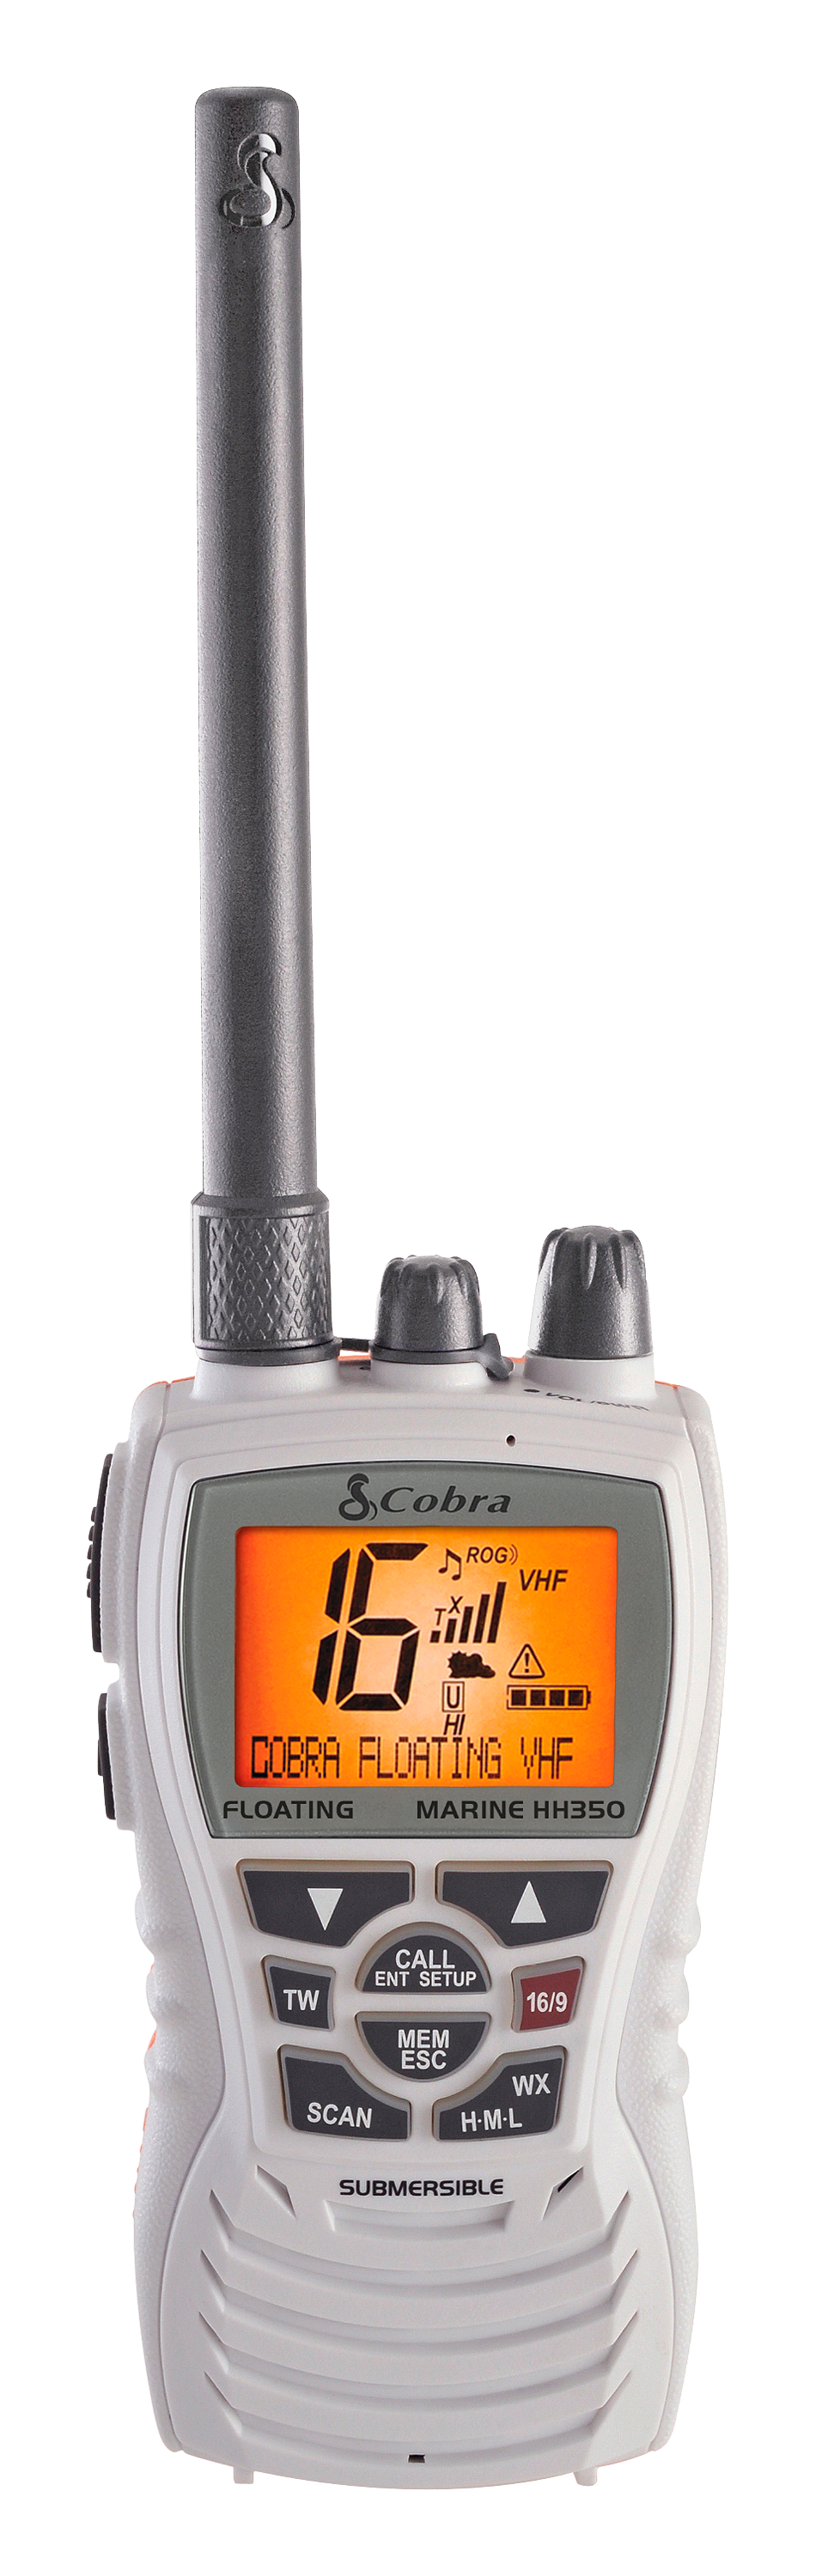 Cobra MRHH350 FLT Floating VHF Handheld Marine Radio